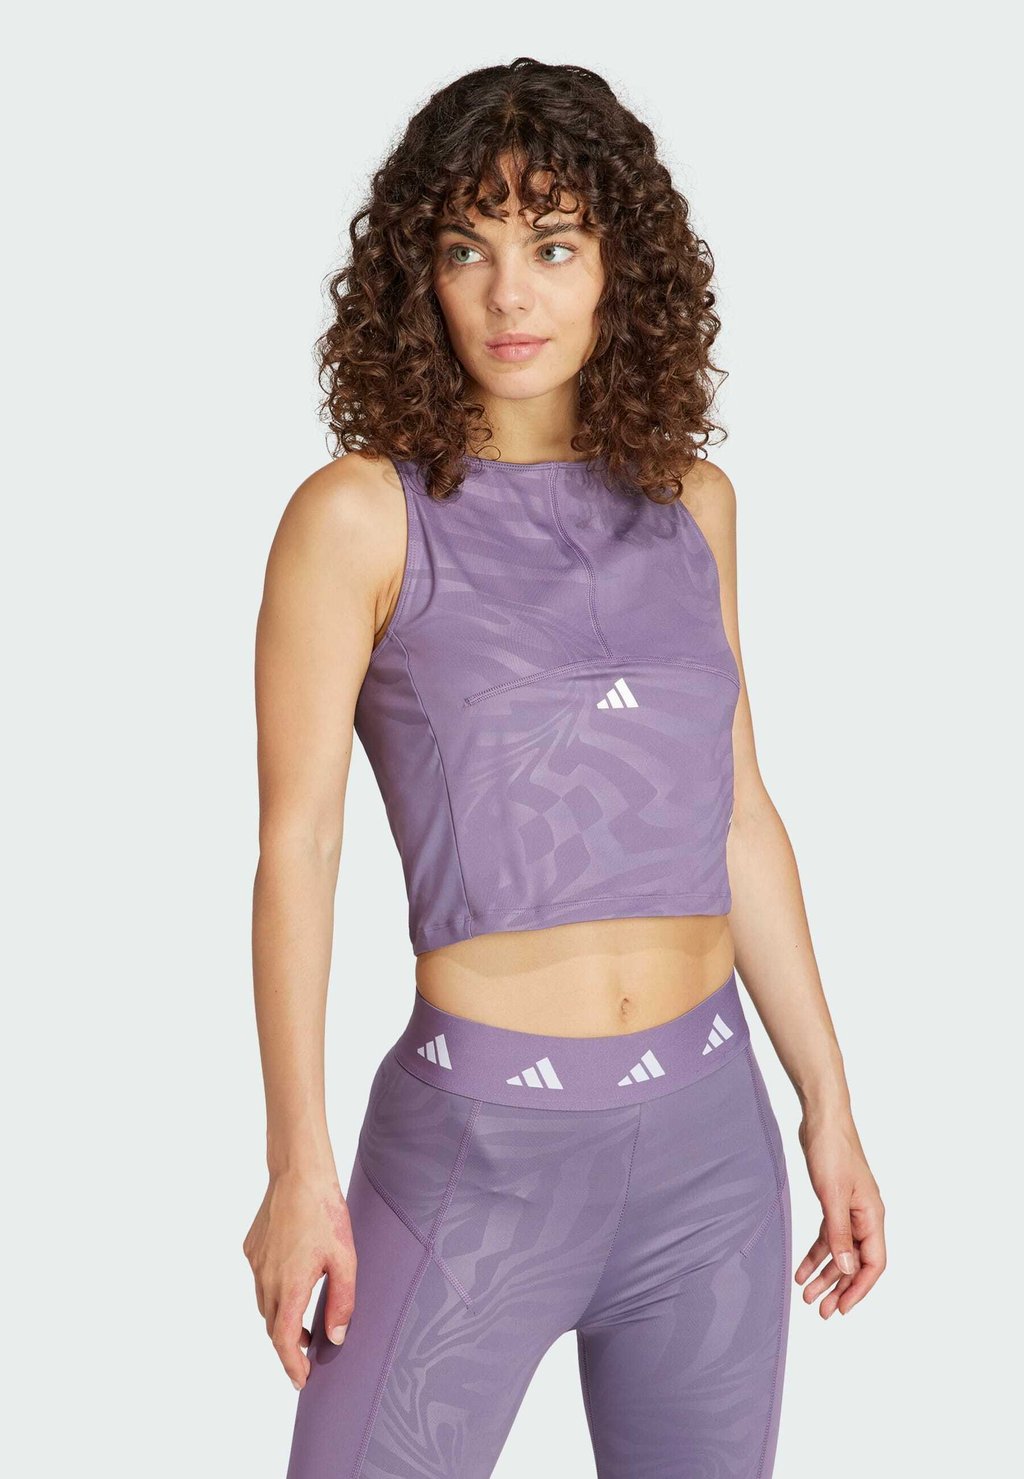 платье adidas фиолетовый Топ adidas Performance, фиолетовый